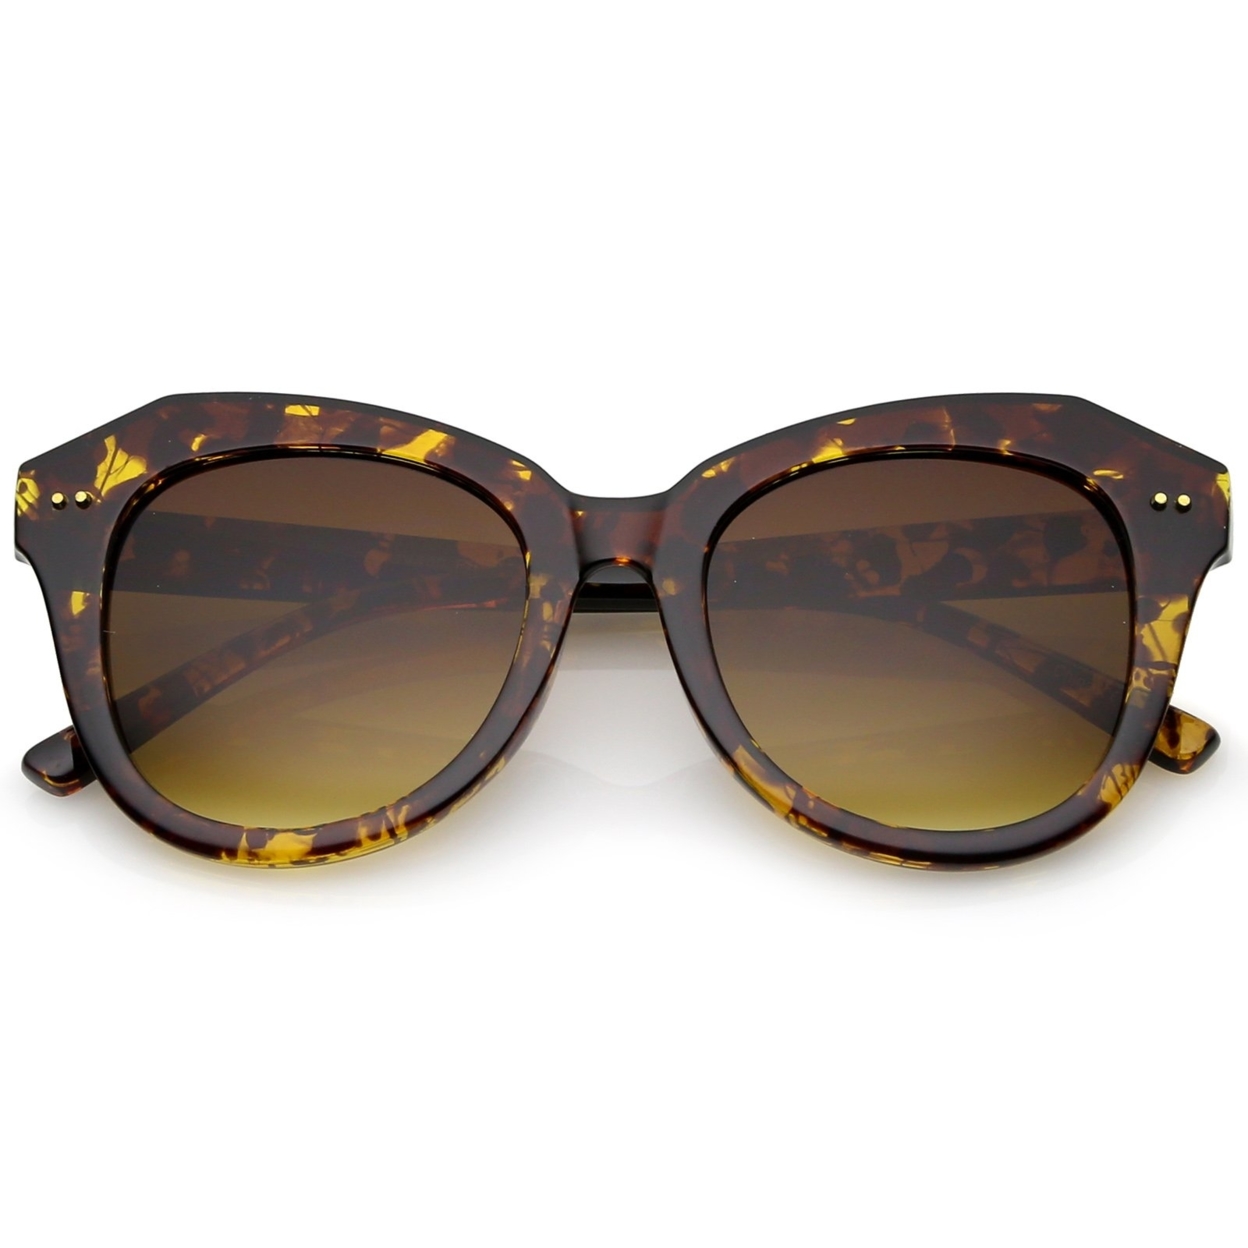 Women's Oversize Horn Rimmed Round Lens Cat Eye Sunglasses 52mm - Black / Lavender